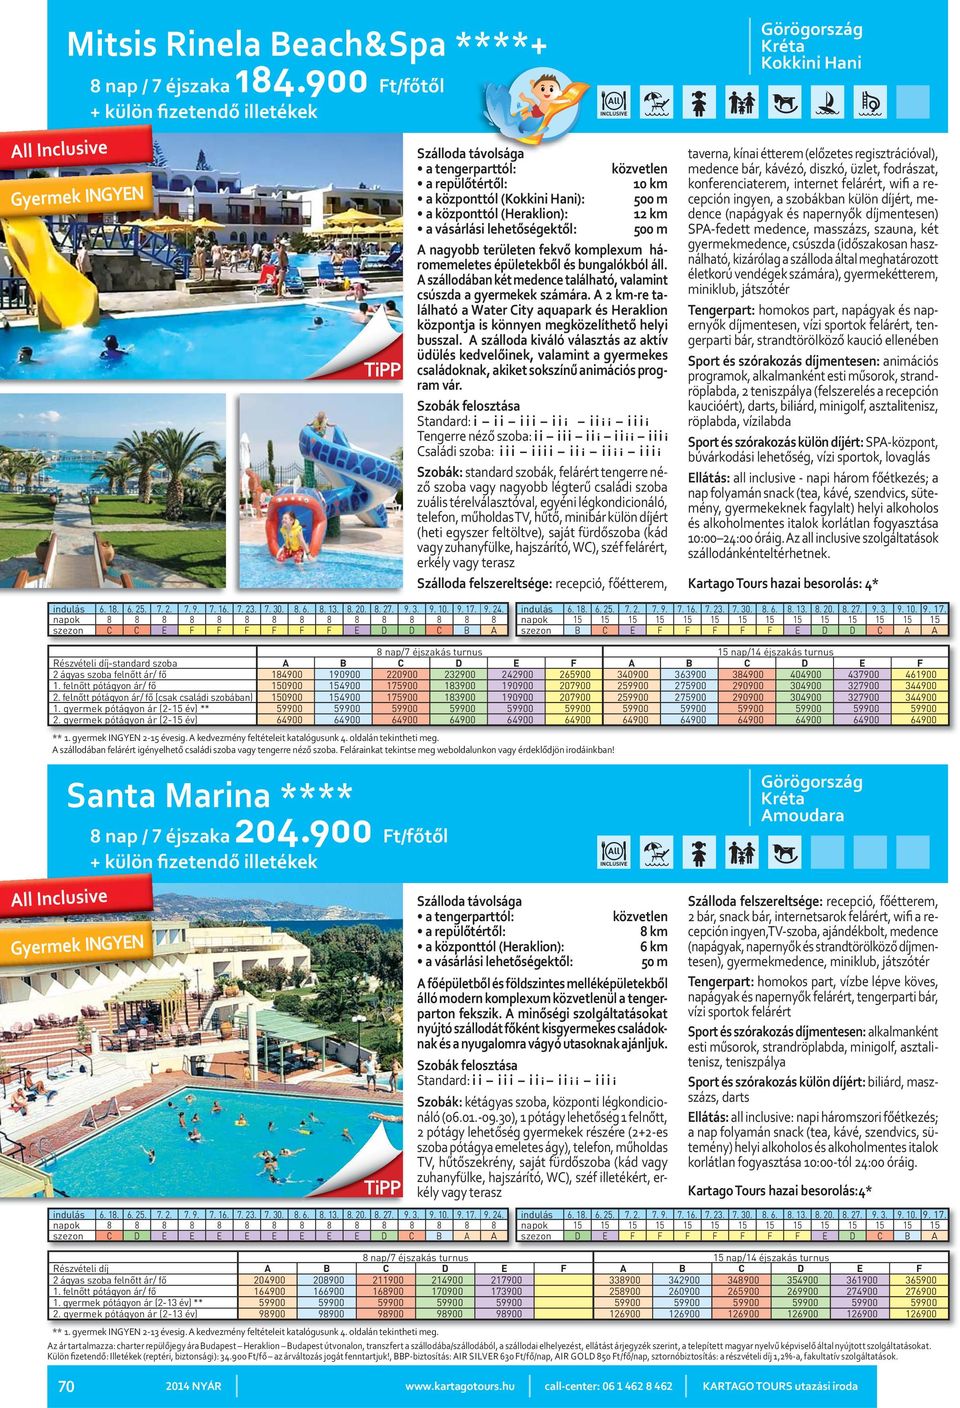 A szállodában két medence található, valamint csúszda a gyermekek számára. A 2 km-re található a Water City aquapark és Heraklion központja is könnyen megközelíthető helyi busszal.